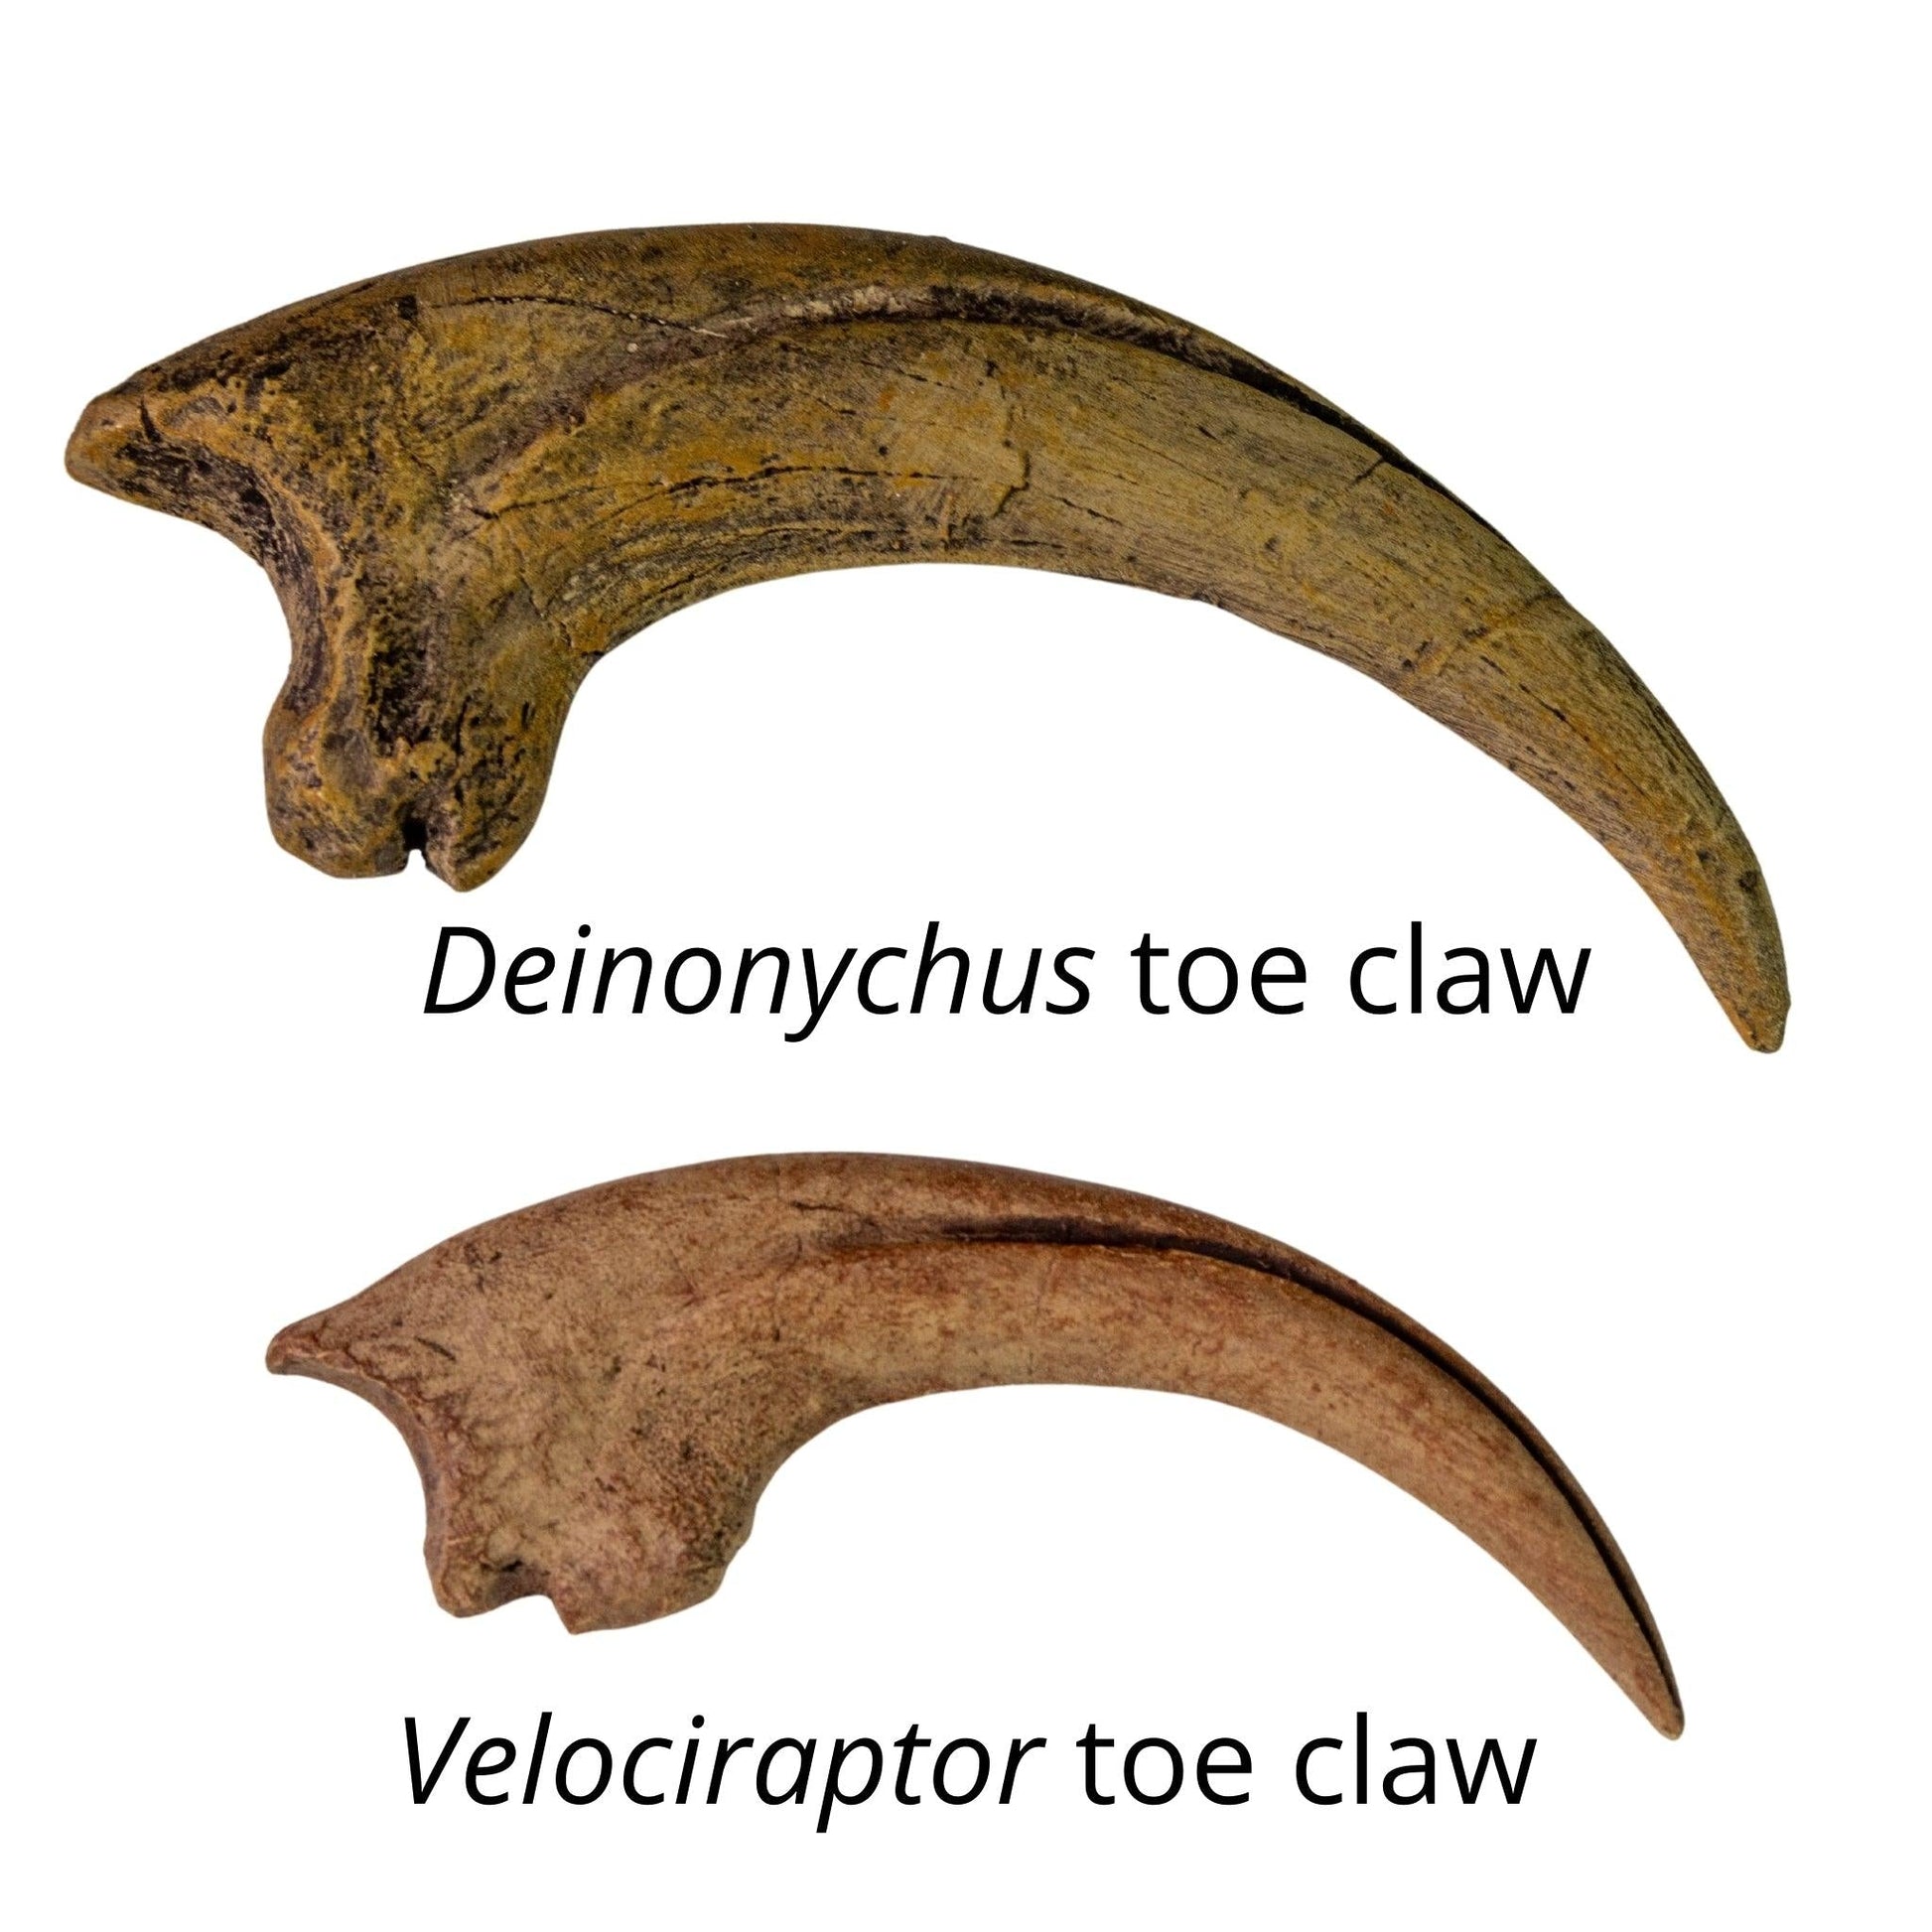 Deinonychus toe claw and Velociraptor toe claw